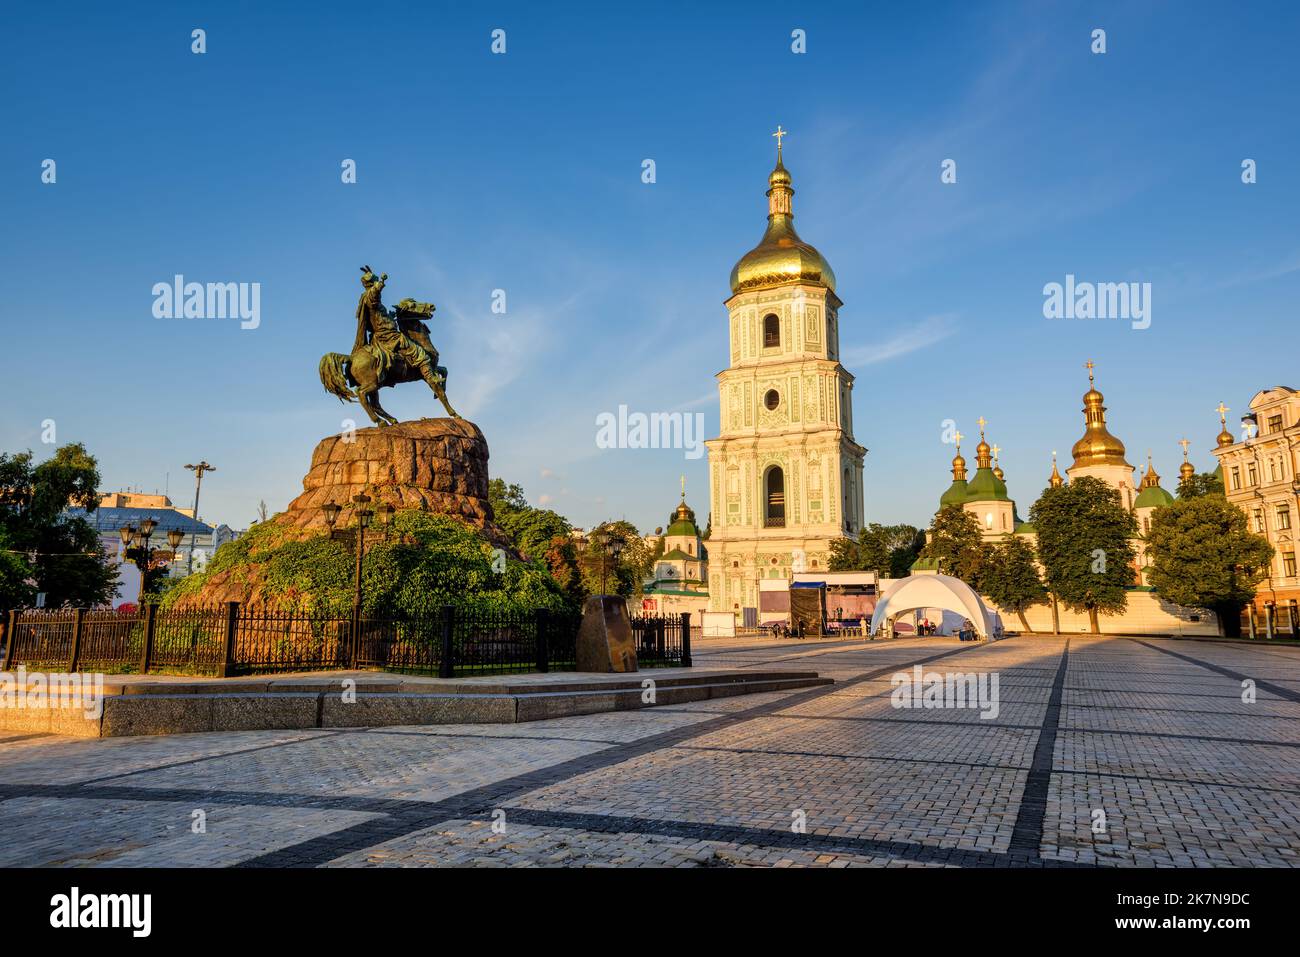 Sophia-Platz im Stadtzentrum von Kiew mit dem Khmelnytsky-Denkmal und dem Glockenturm der Sophienkathedrale, Kiew, Ukraine Stockfoto